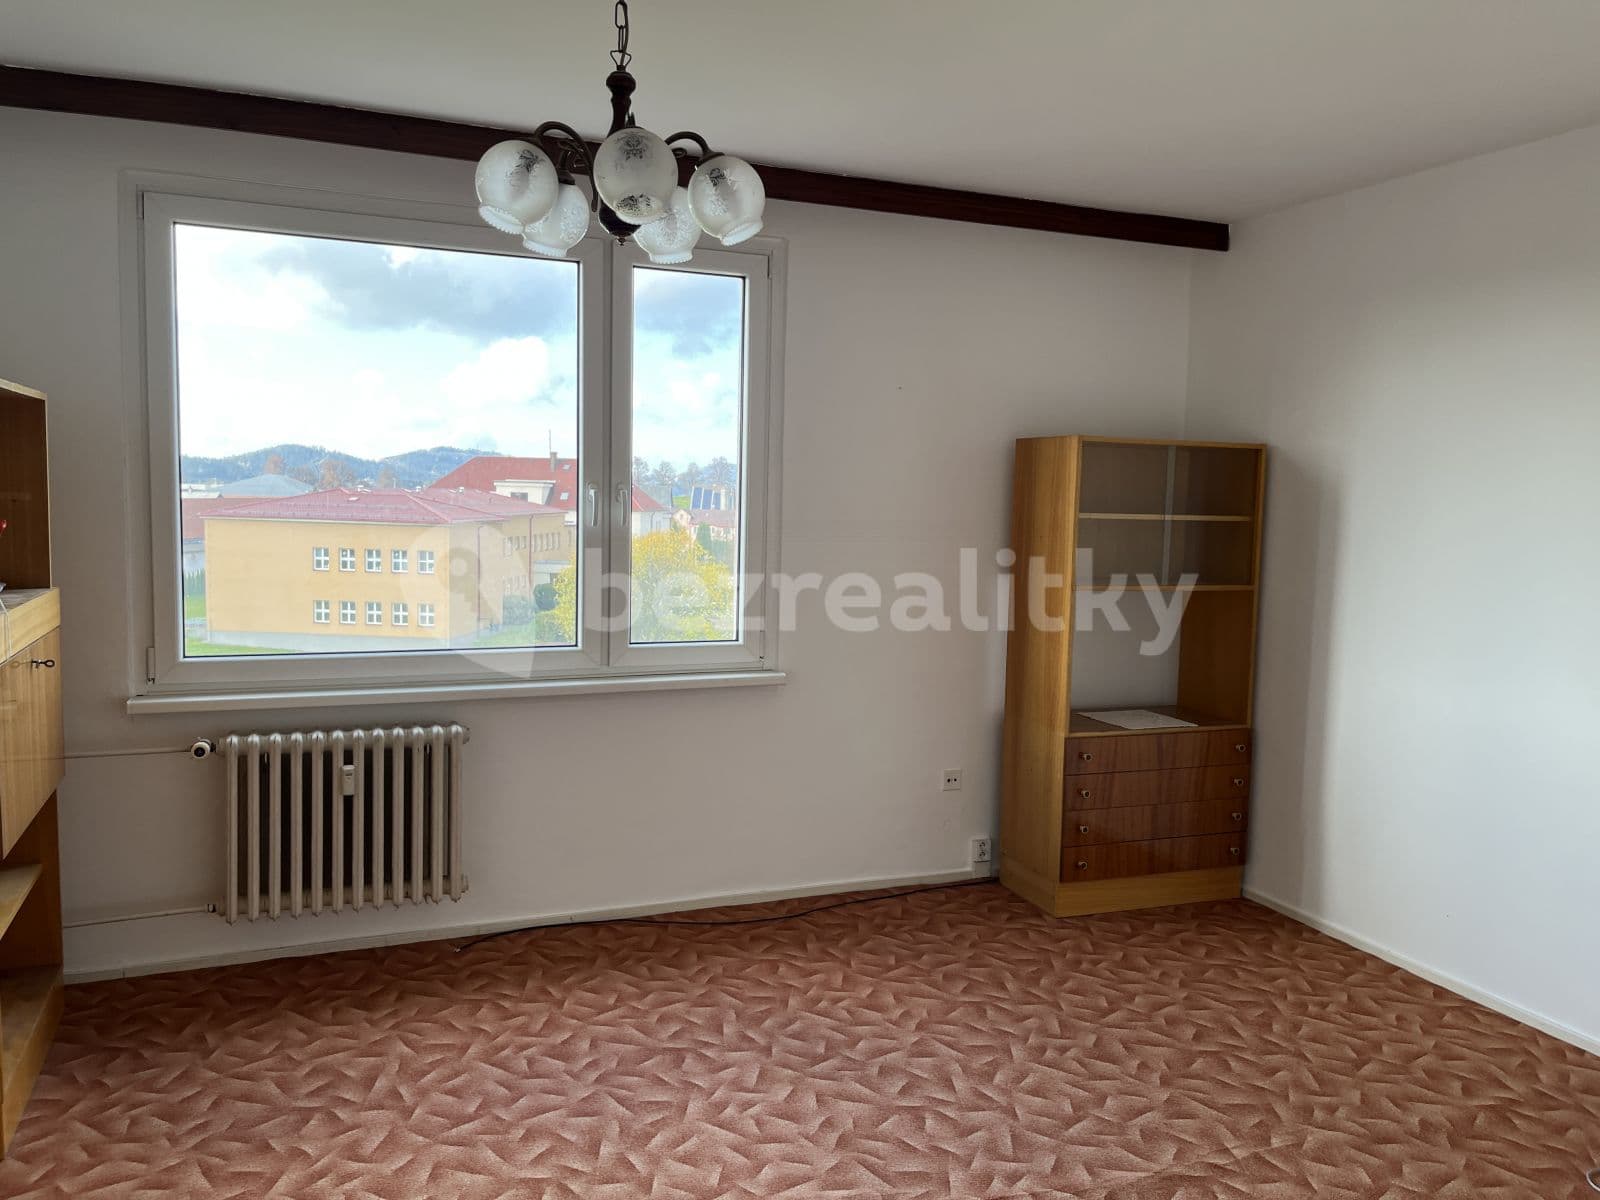 4 bedroom flat to rent, 90 m², Žamberk, Pardubický Region